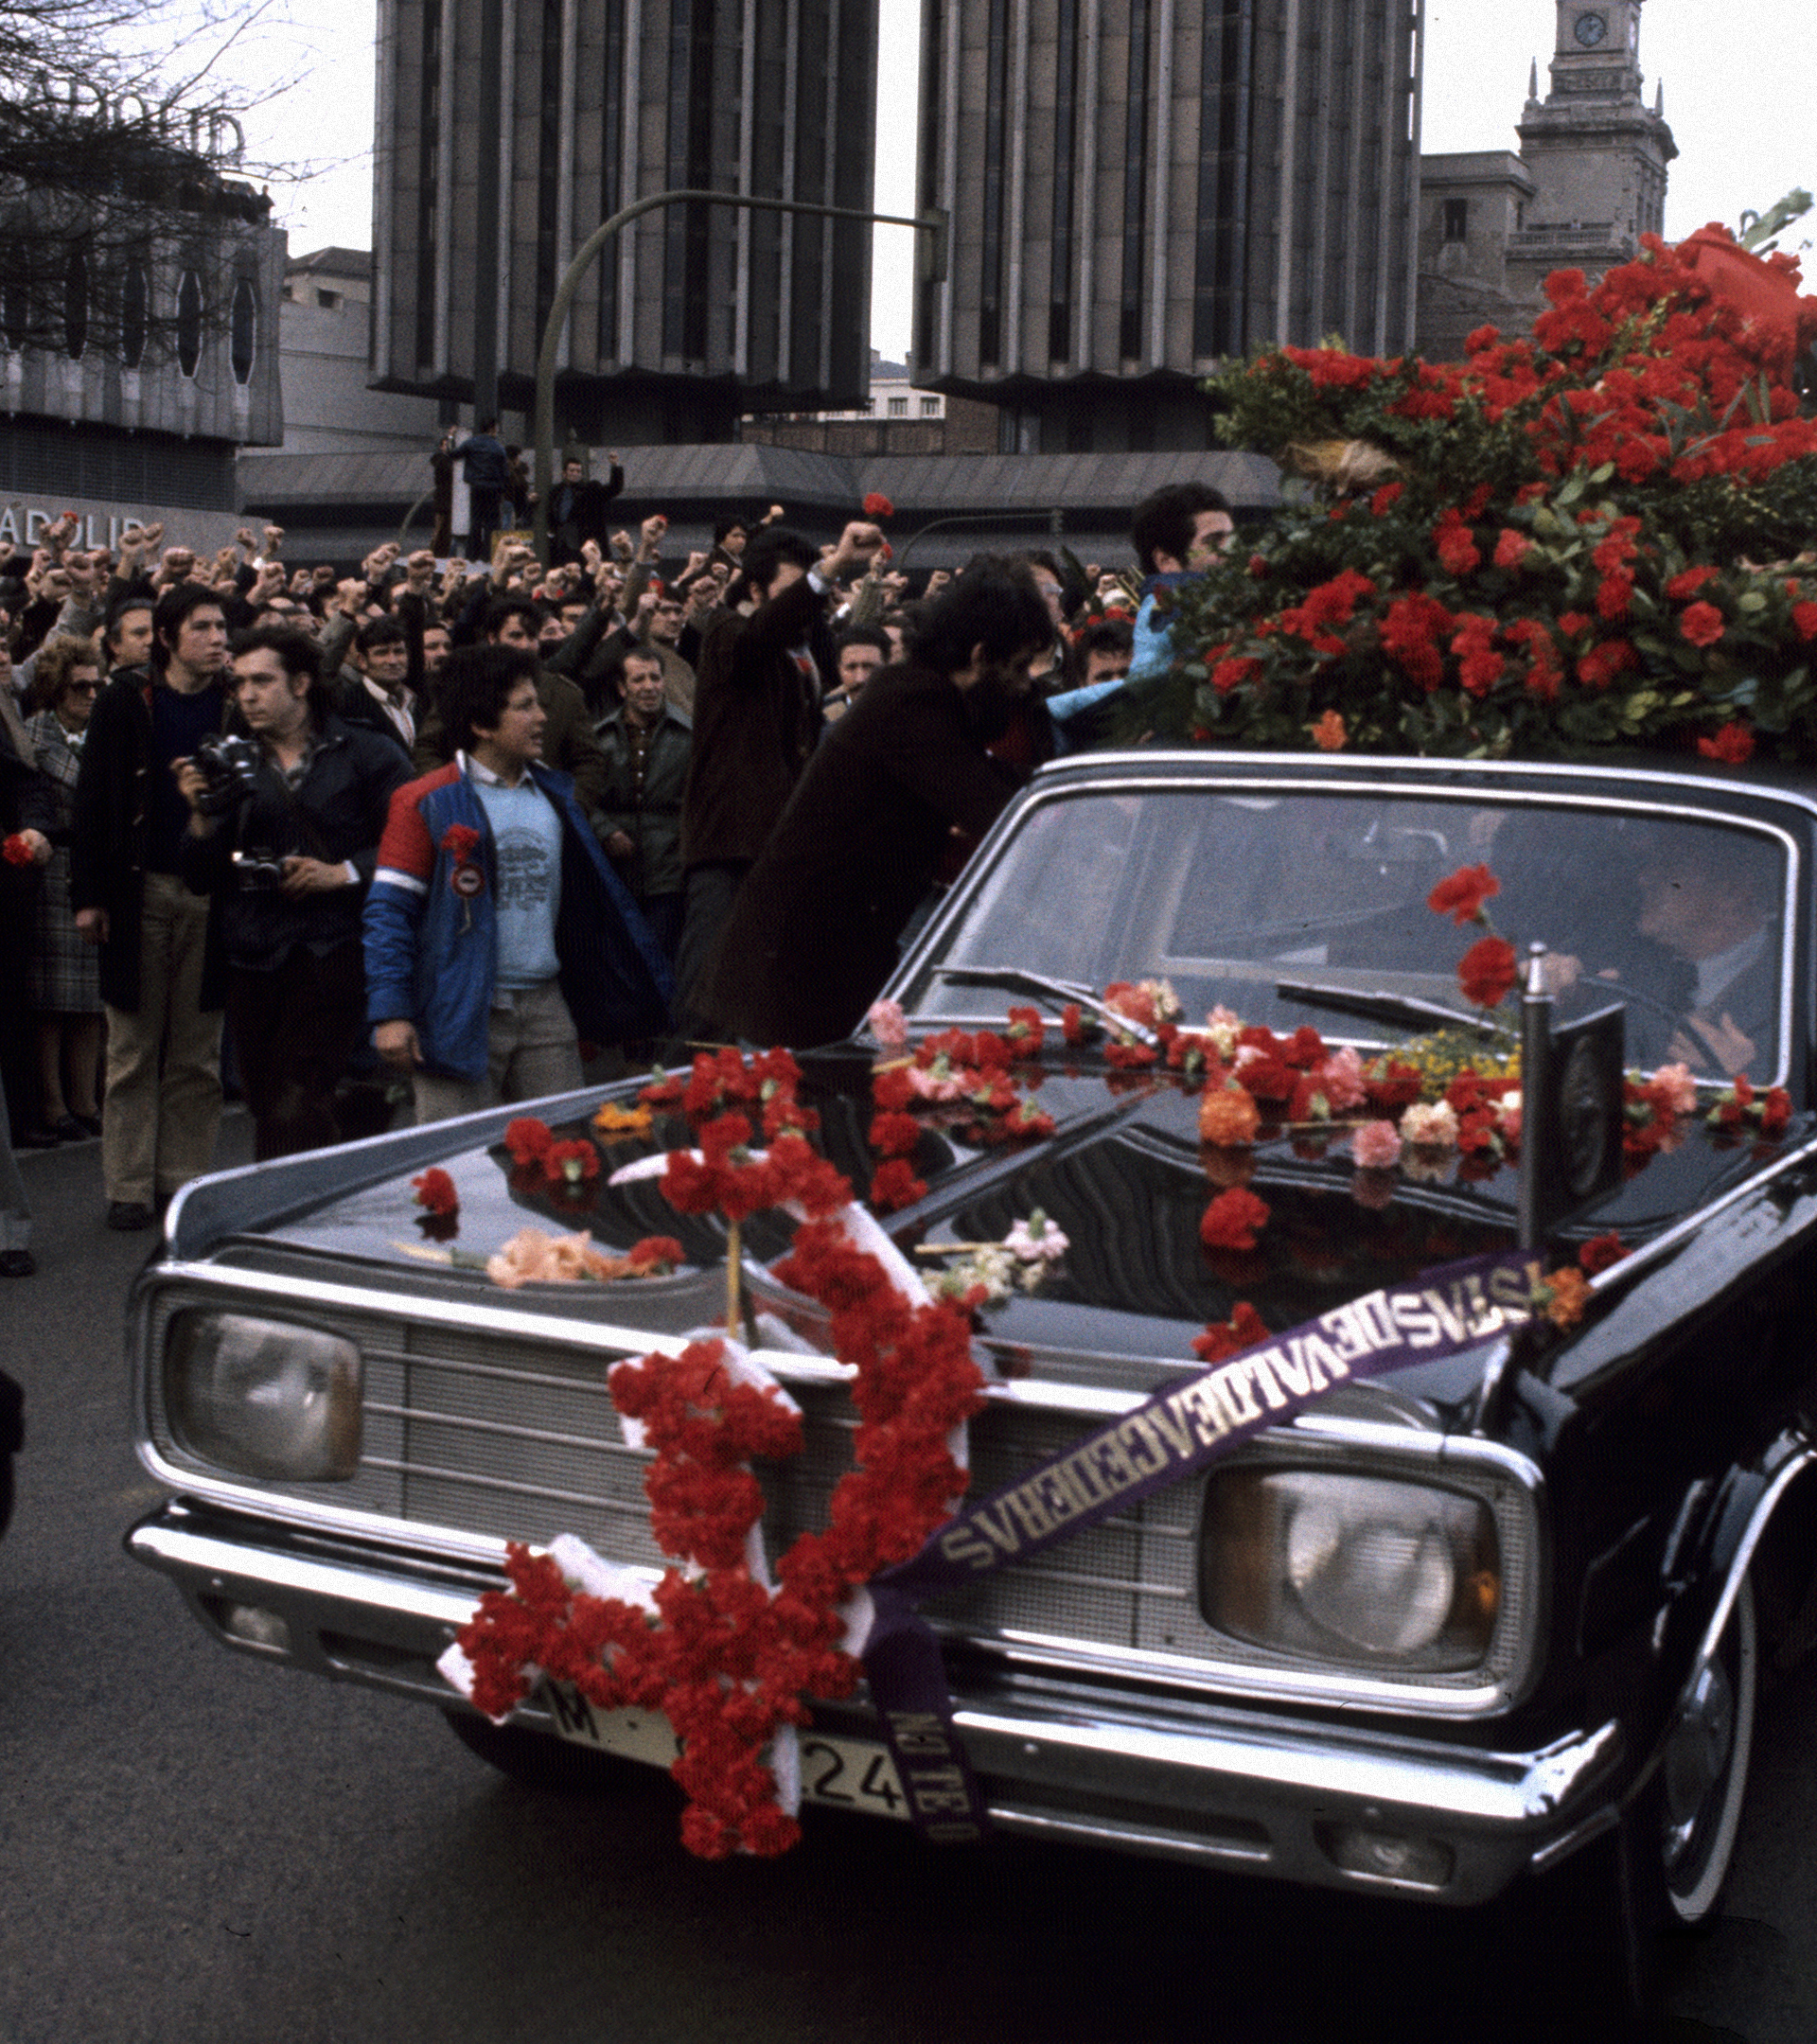 45 años de la semana que pudo frenar la Democracia: la matanza de Atocha fue "tan bestial que trajo la reconciliación"